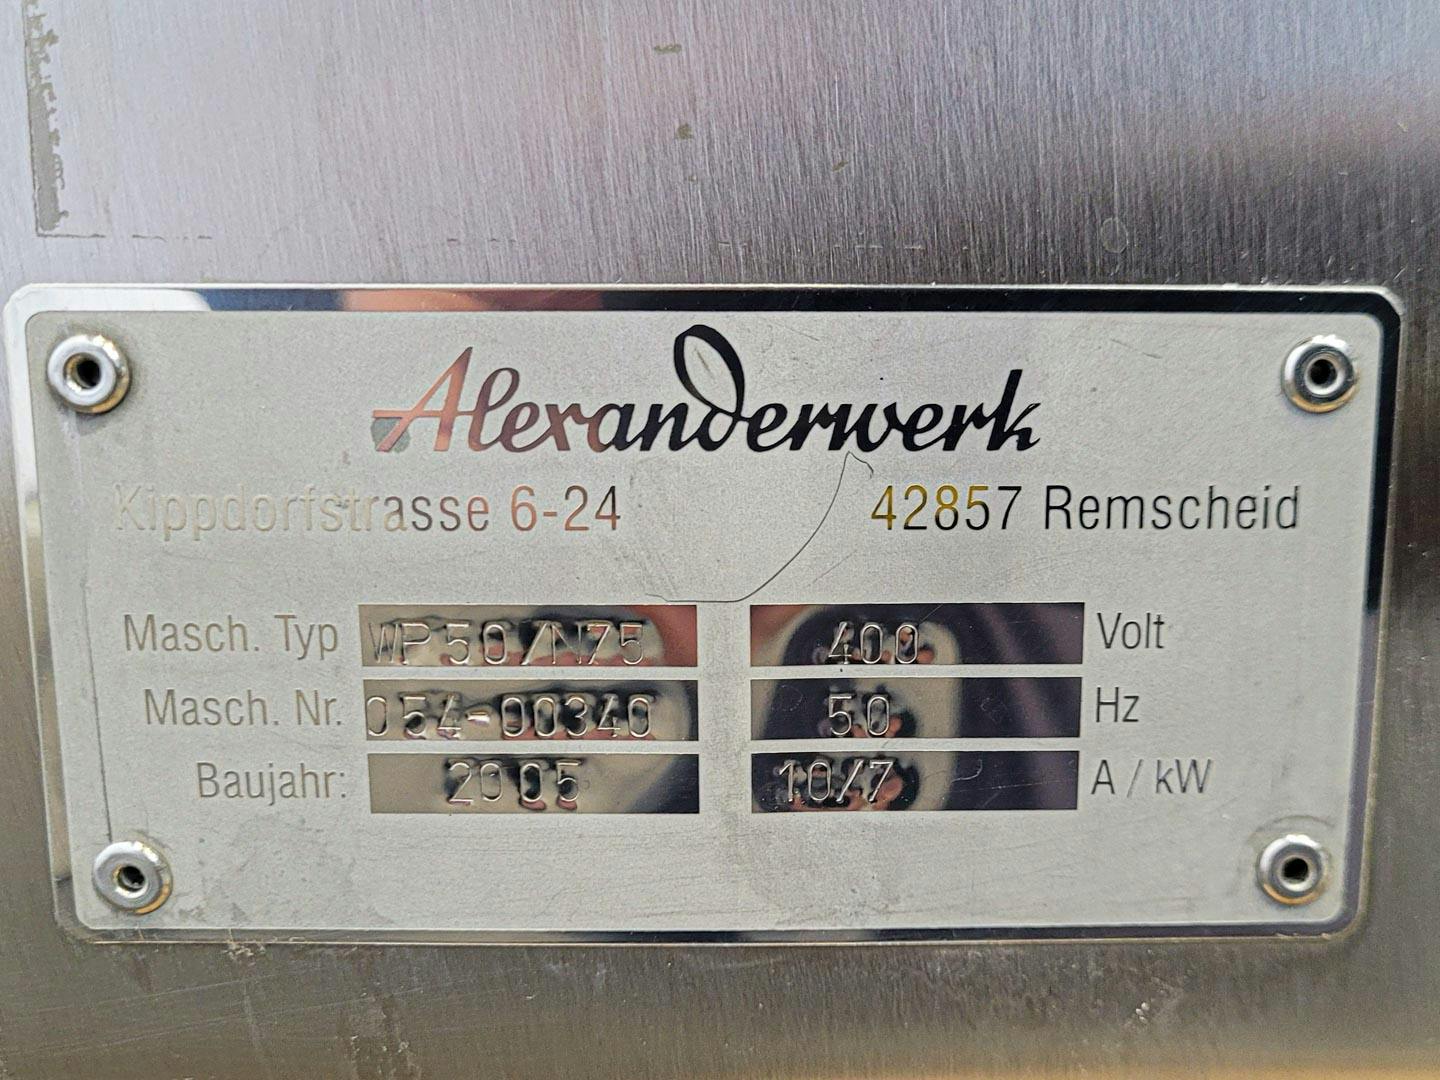 Alexanderwerk WP 50 N/75 - Roll compactor - image 14